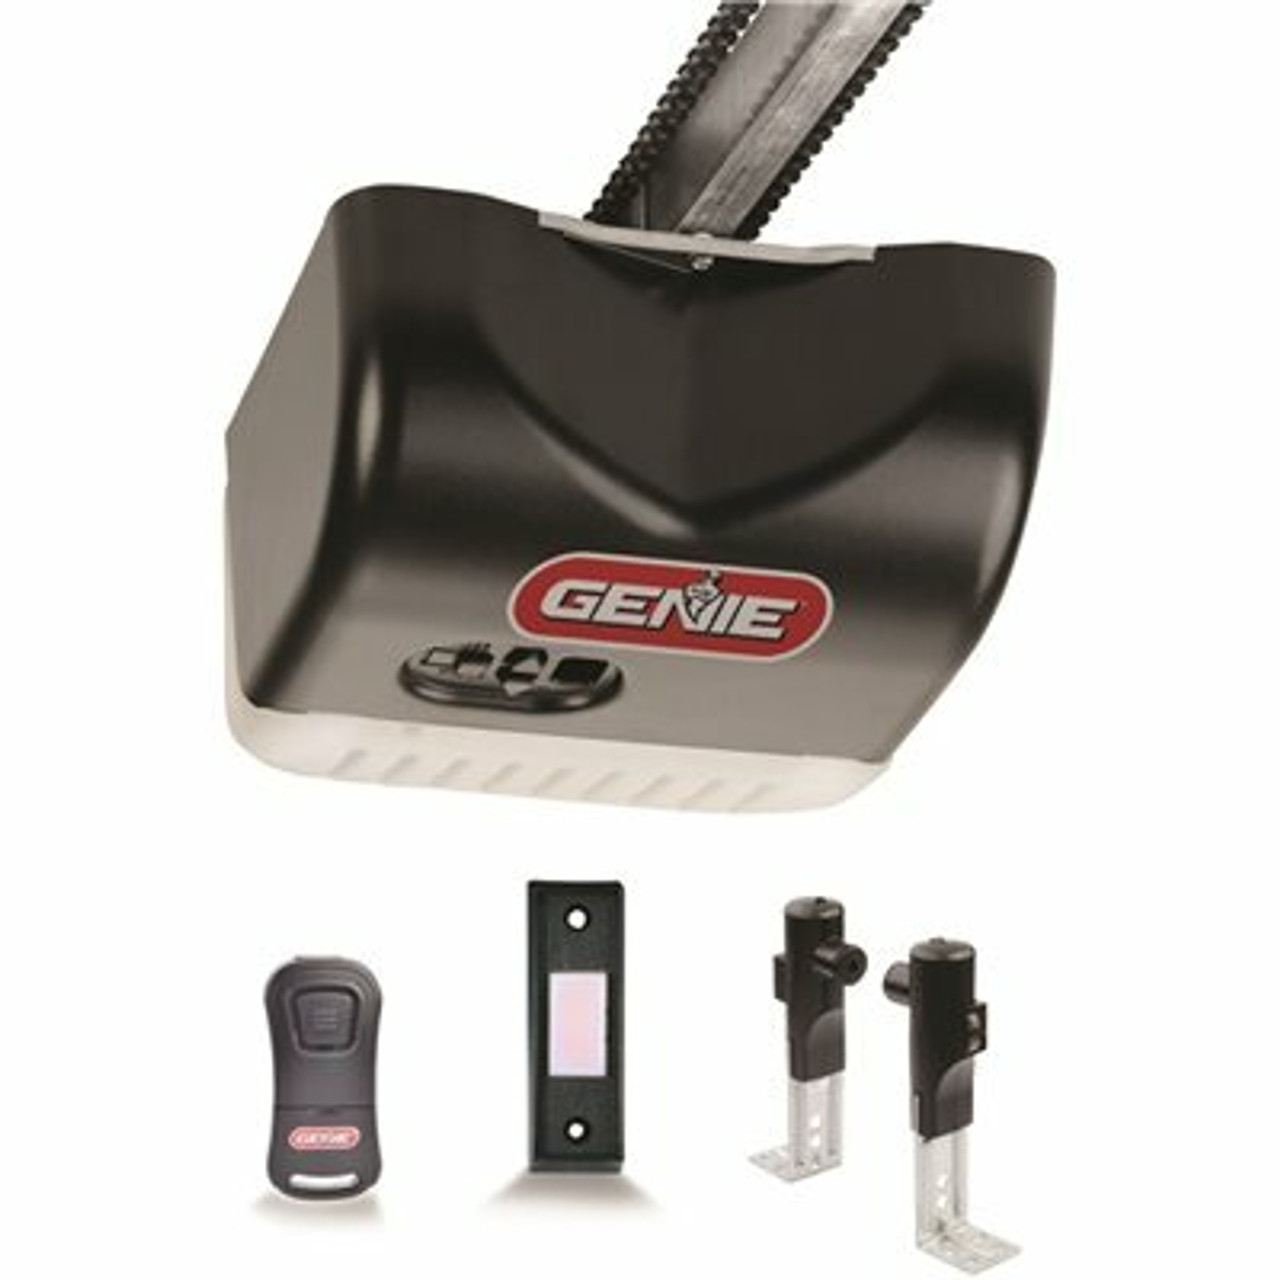 Genie 1/2 Hp Durable Chain Drive Garage Door Opener